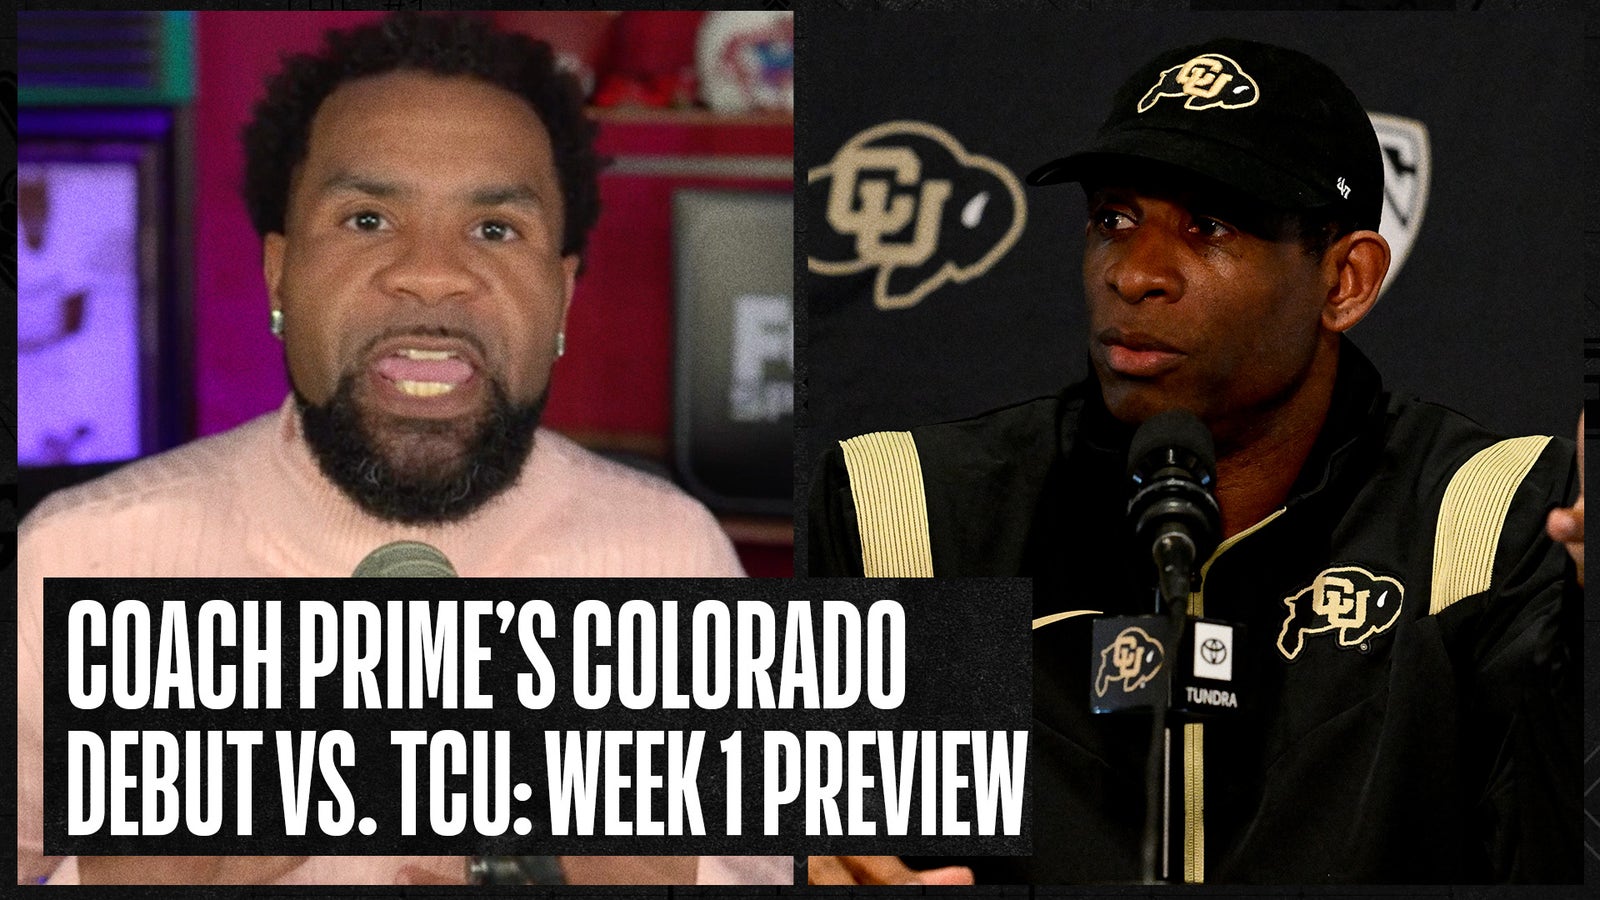 Week 1 Preview: Coach Prime's Colorado debut vs TCU 